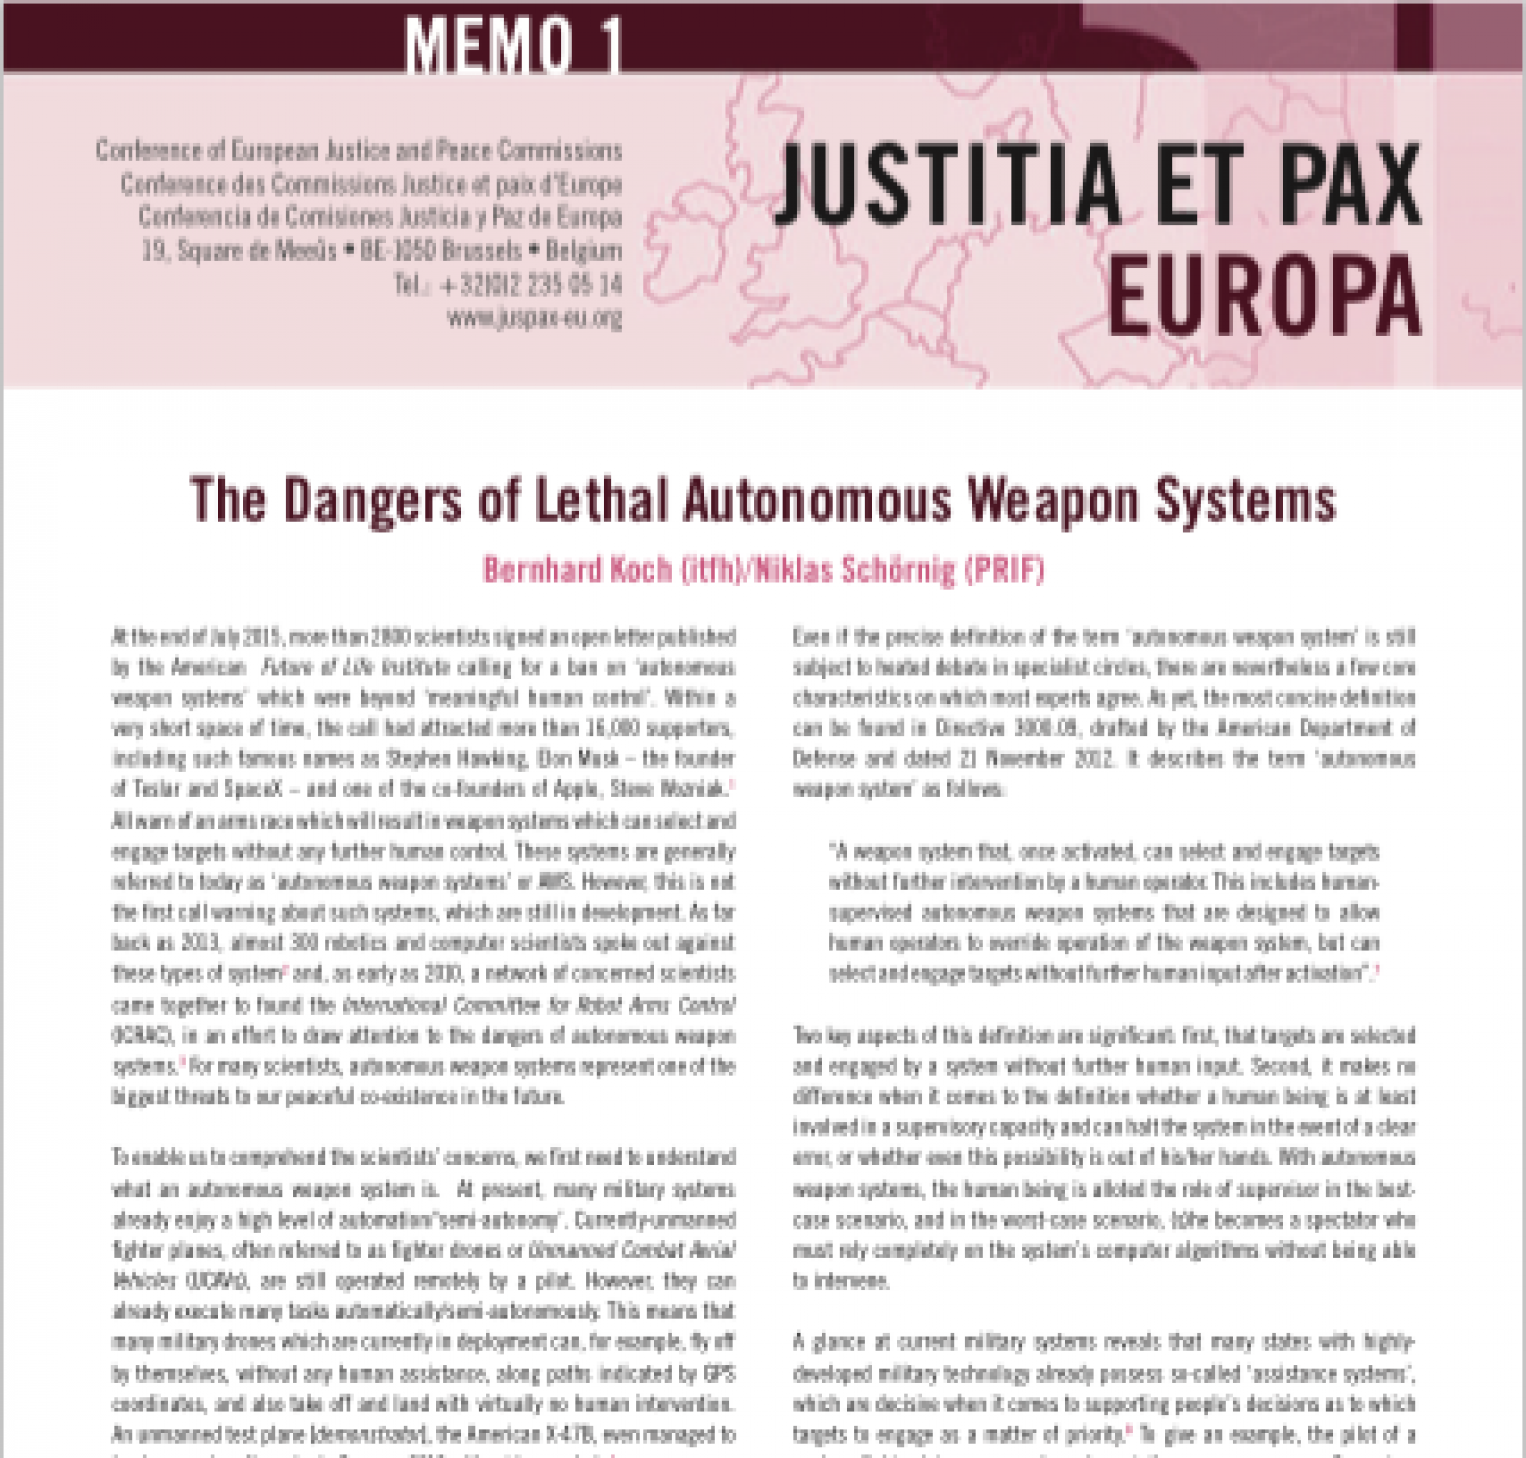 Memorandum on "The Dangers of Lethal Autonomous Weapon Systems"